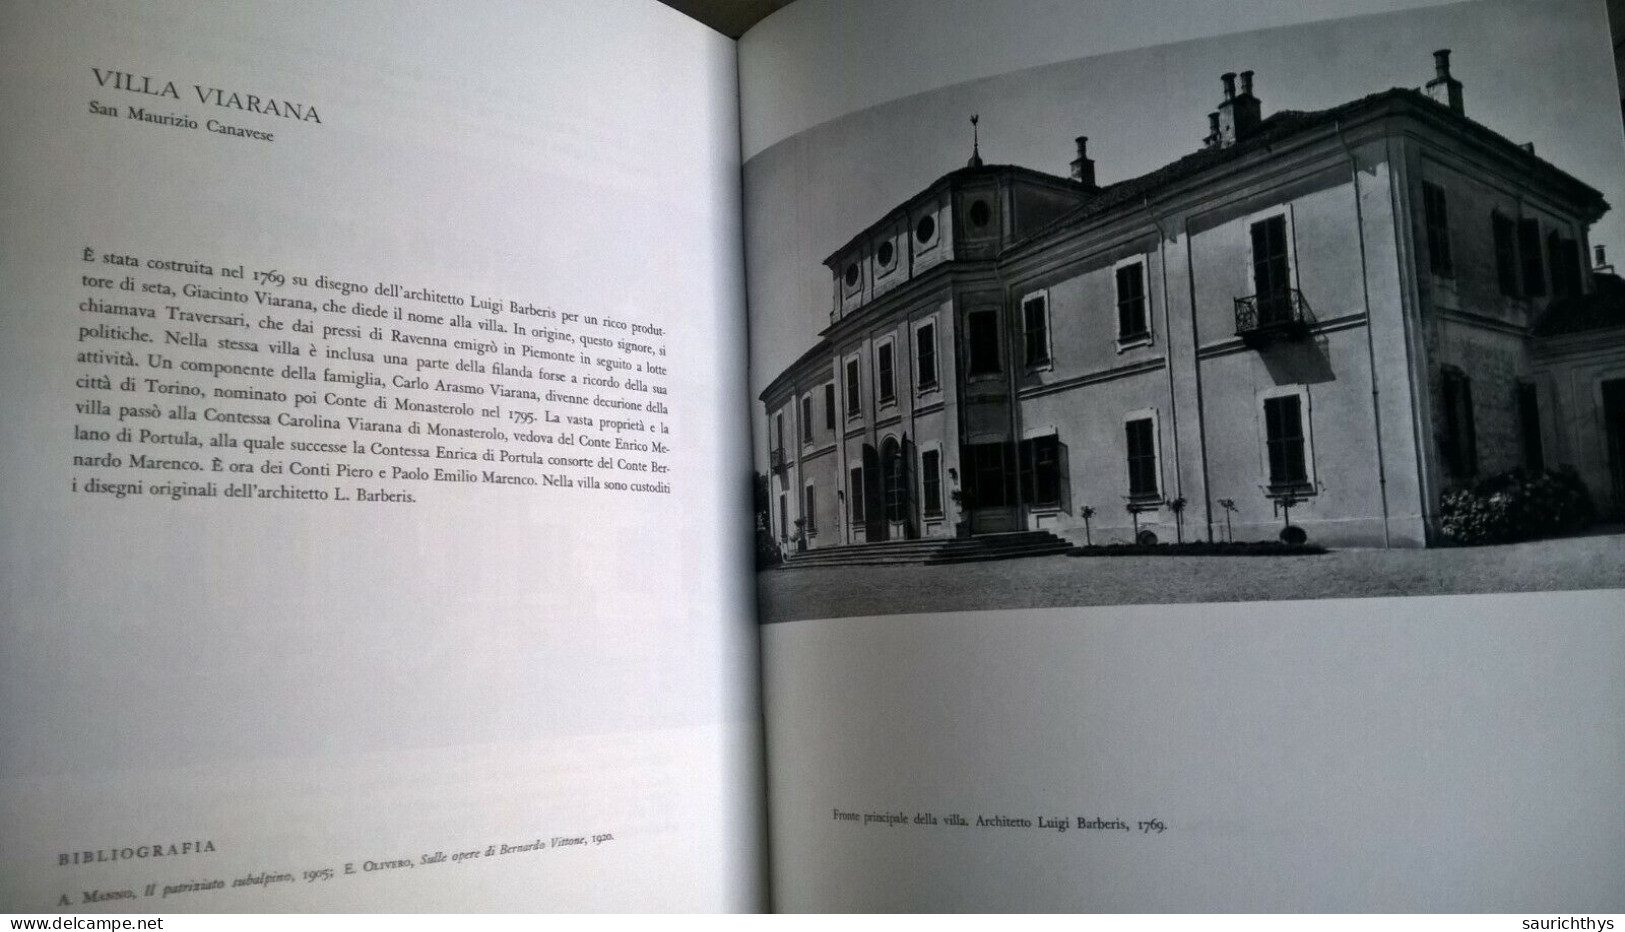 Augusto Pedrini Ville Dei Secoli Xvii E Xviii In Piemonte Rotocalco Dagnino Torino 1965 - History, Biography, Philosophy